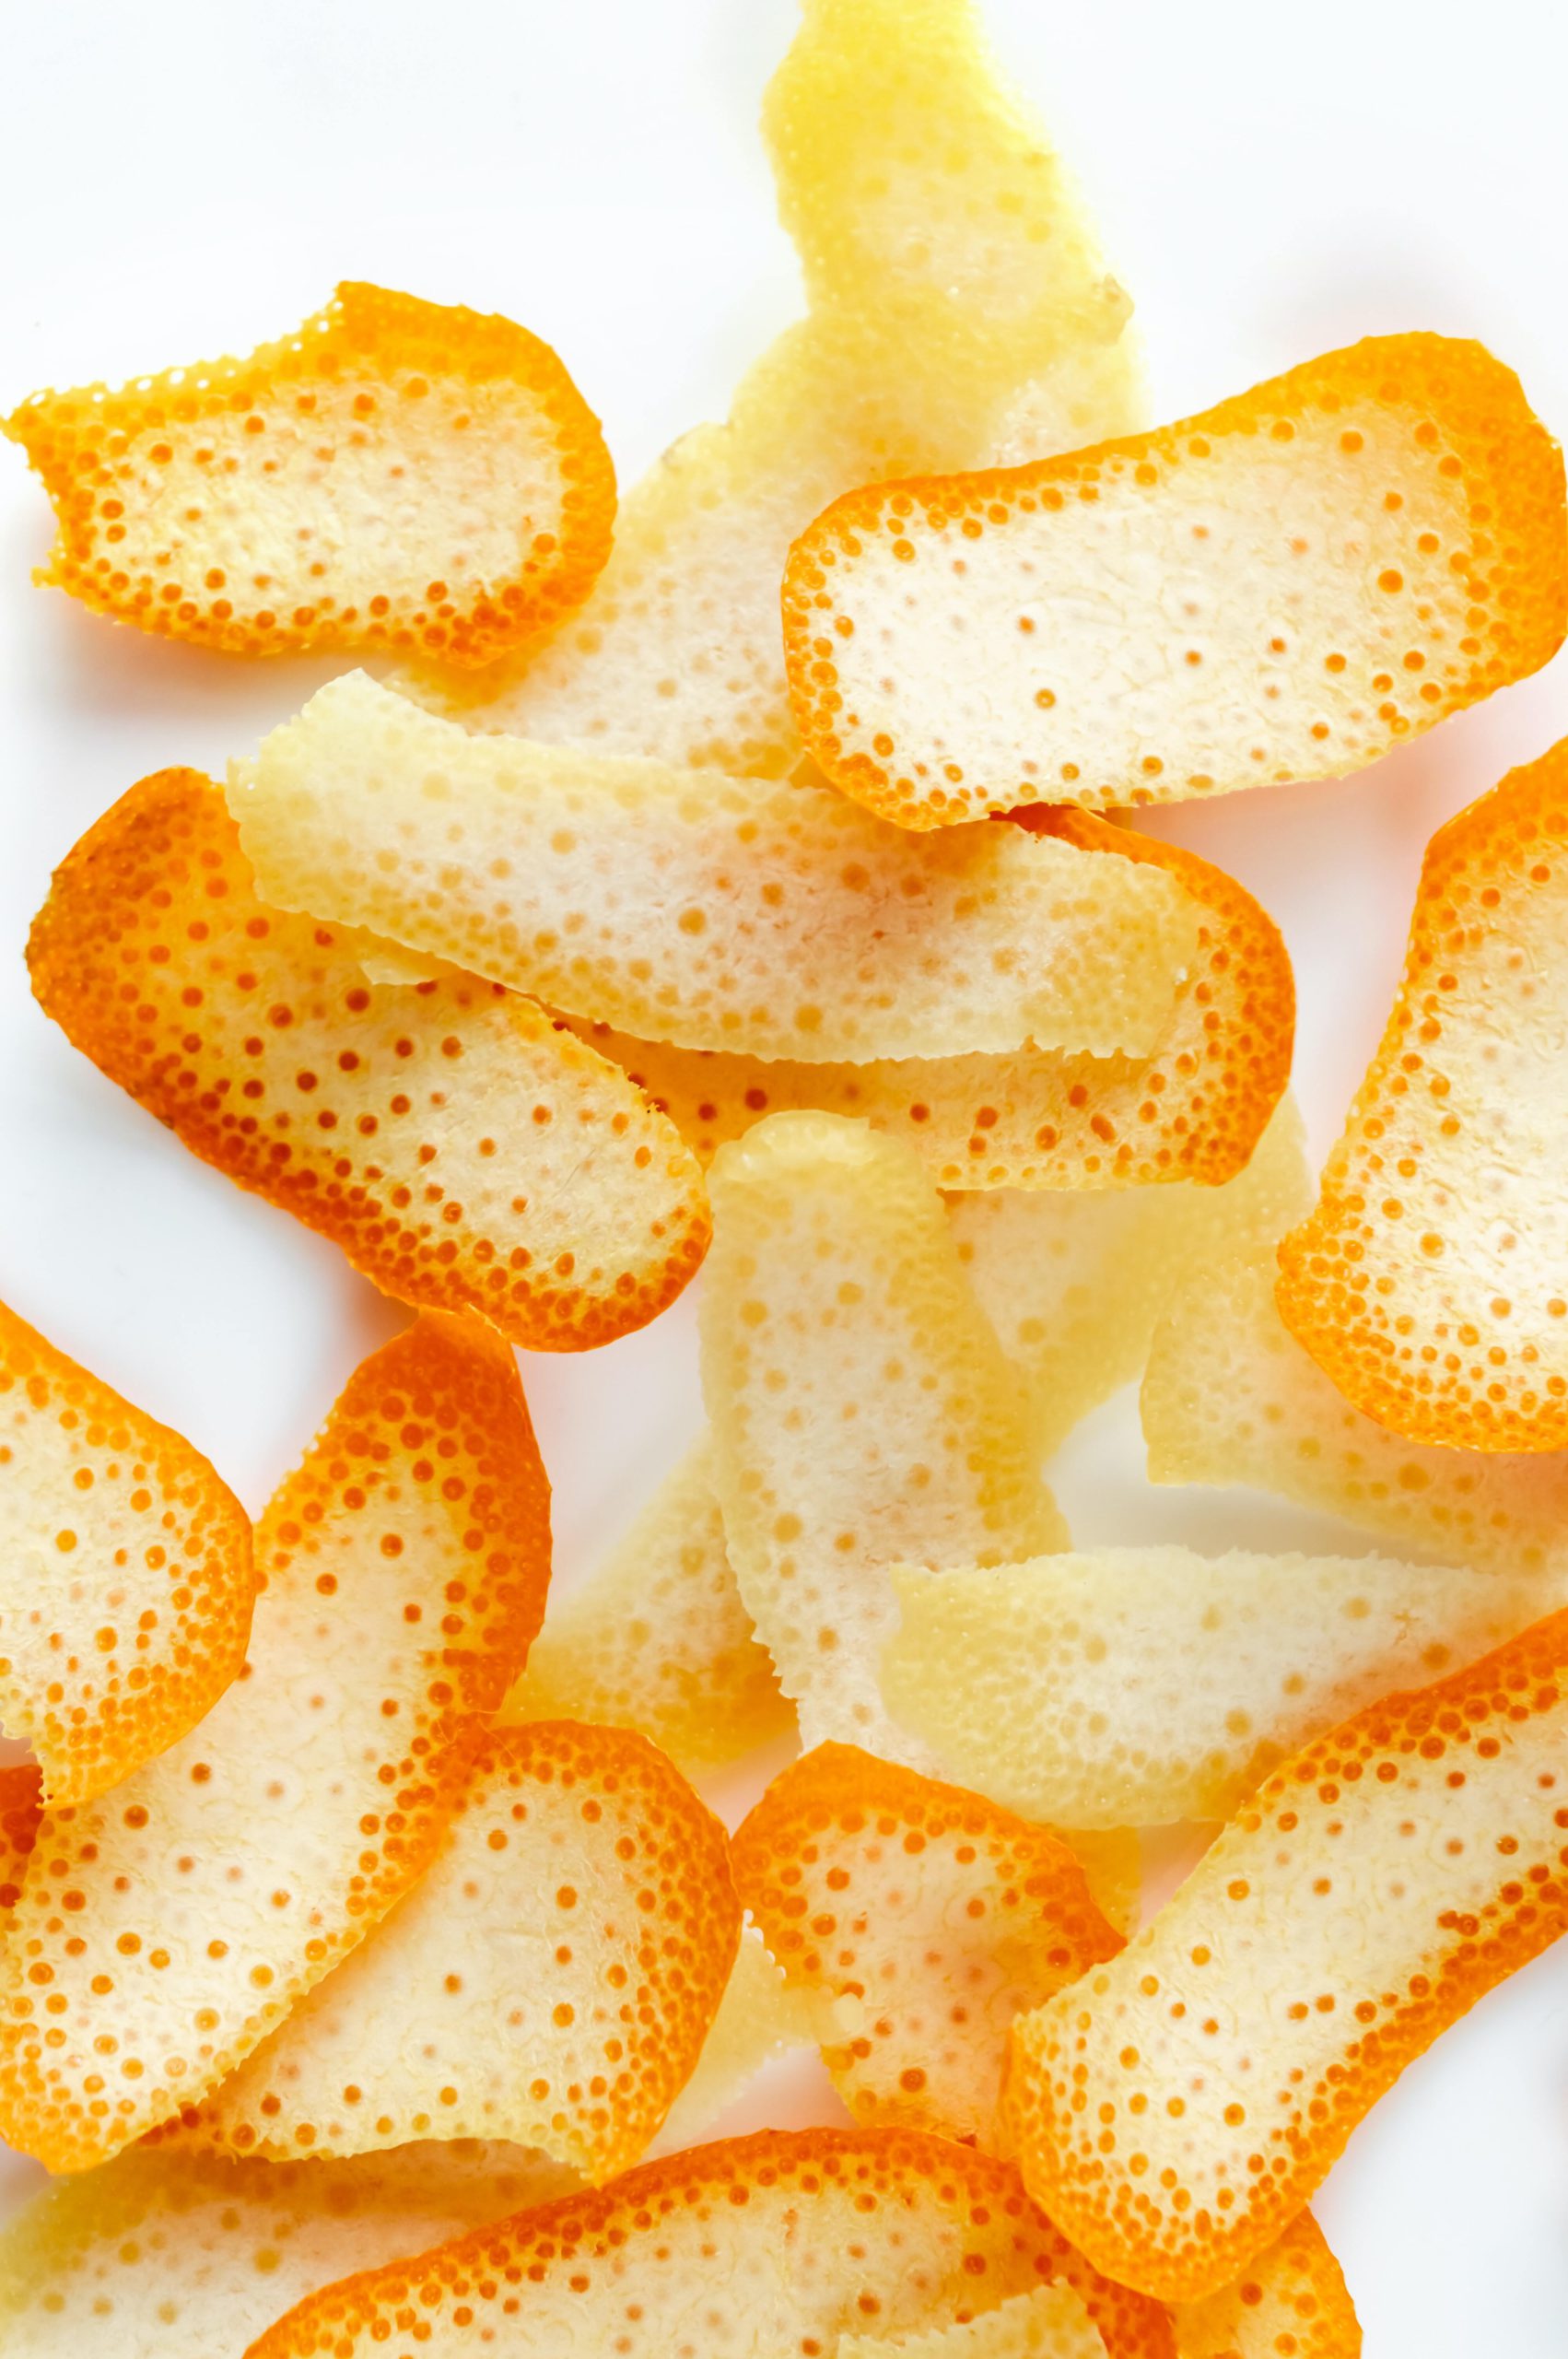 Sự hòa quyện tuyệt vời giữa màu cam tươi trẻ và hình dạng đặc trưng của casca de laranja làm cho những hình ảnh này trở nên thật tuyệt vời. Khám phá sự độc đáo của quả cam qua hình ảnh chụp vỏ cam này.